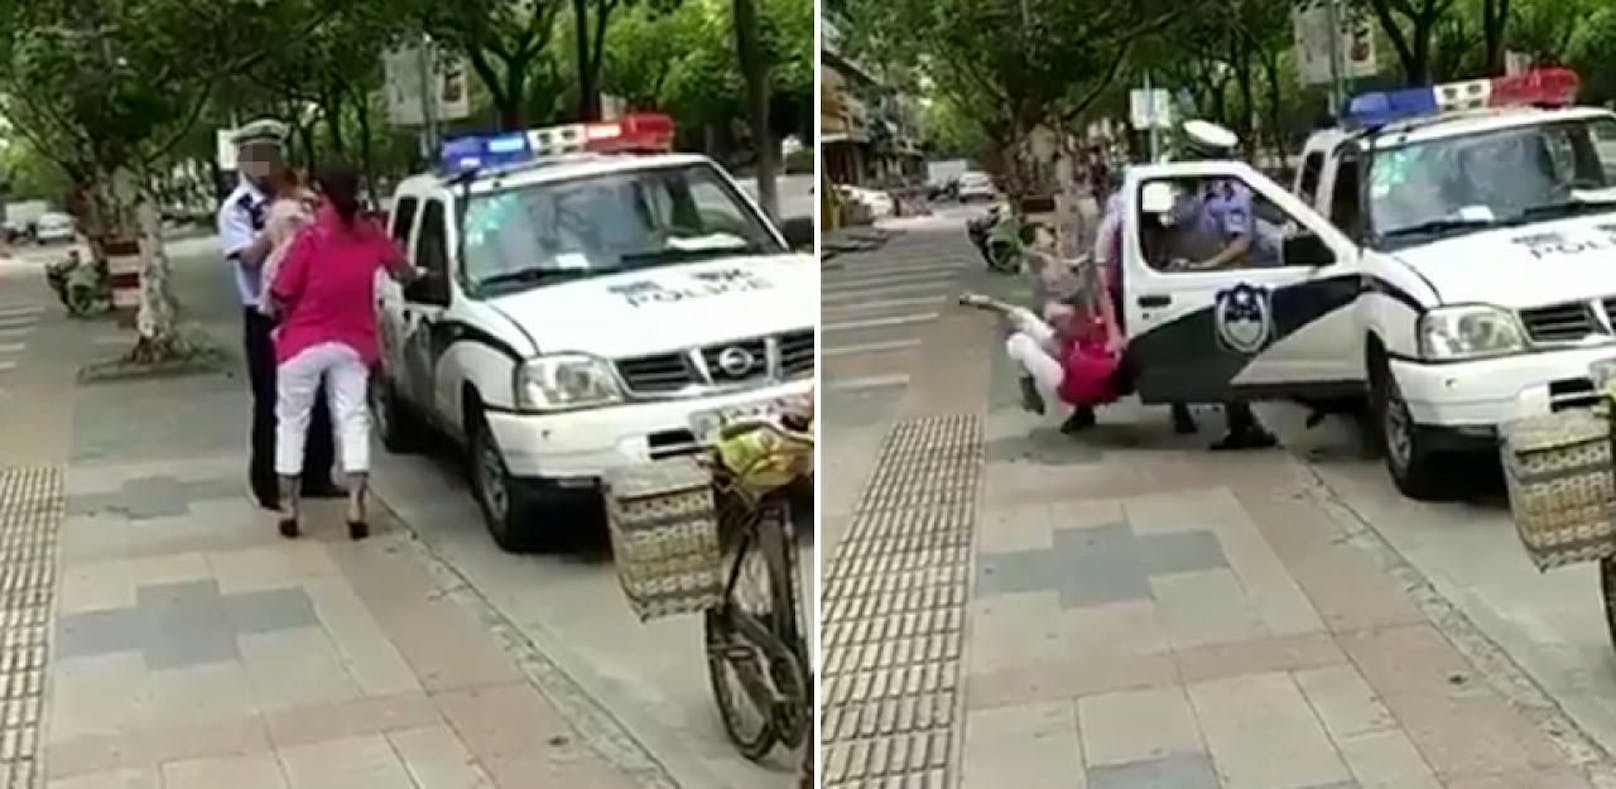 Polizisten strecken Mutter mit Kind am Arm nieder